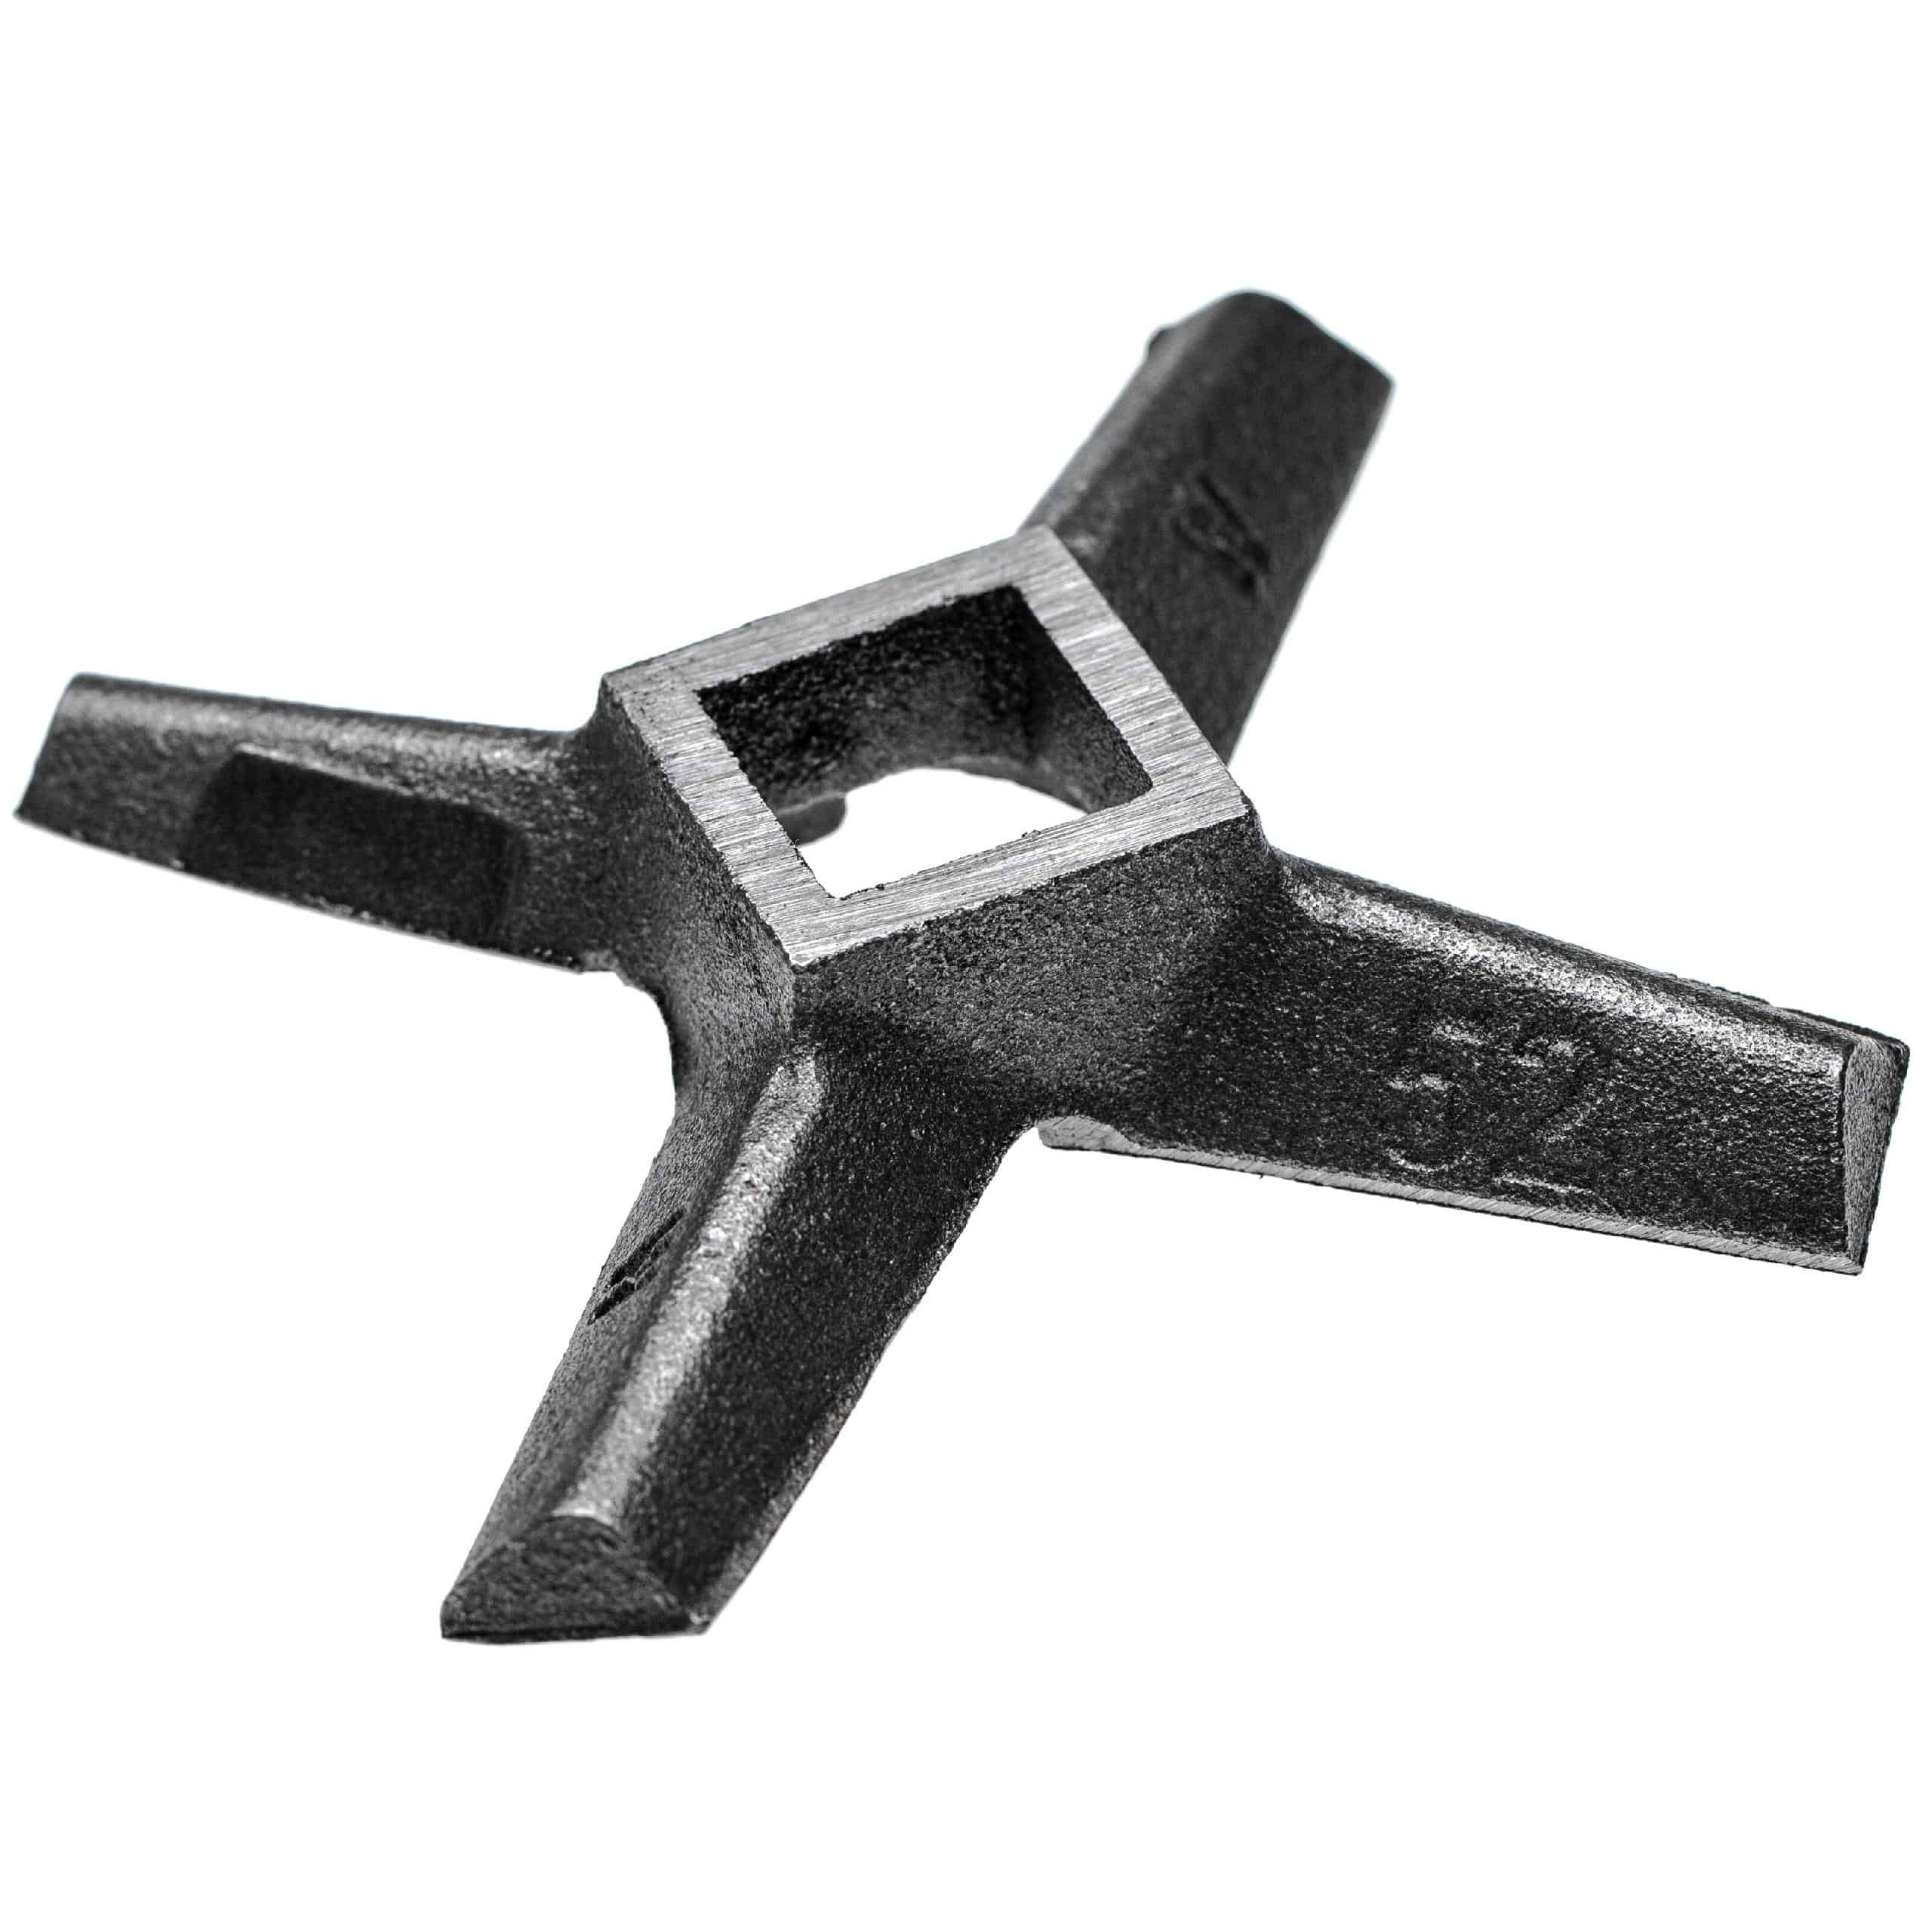 Coltello a croce modello 52 per tritacarne per es. compatibile con ADE, Caso, Fama - quadrato 23,3 x 23,3 mm